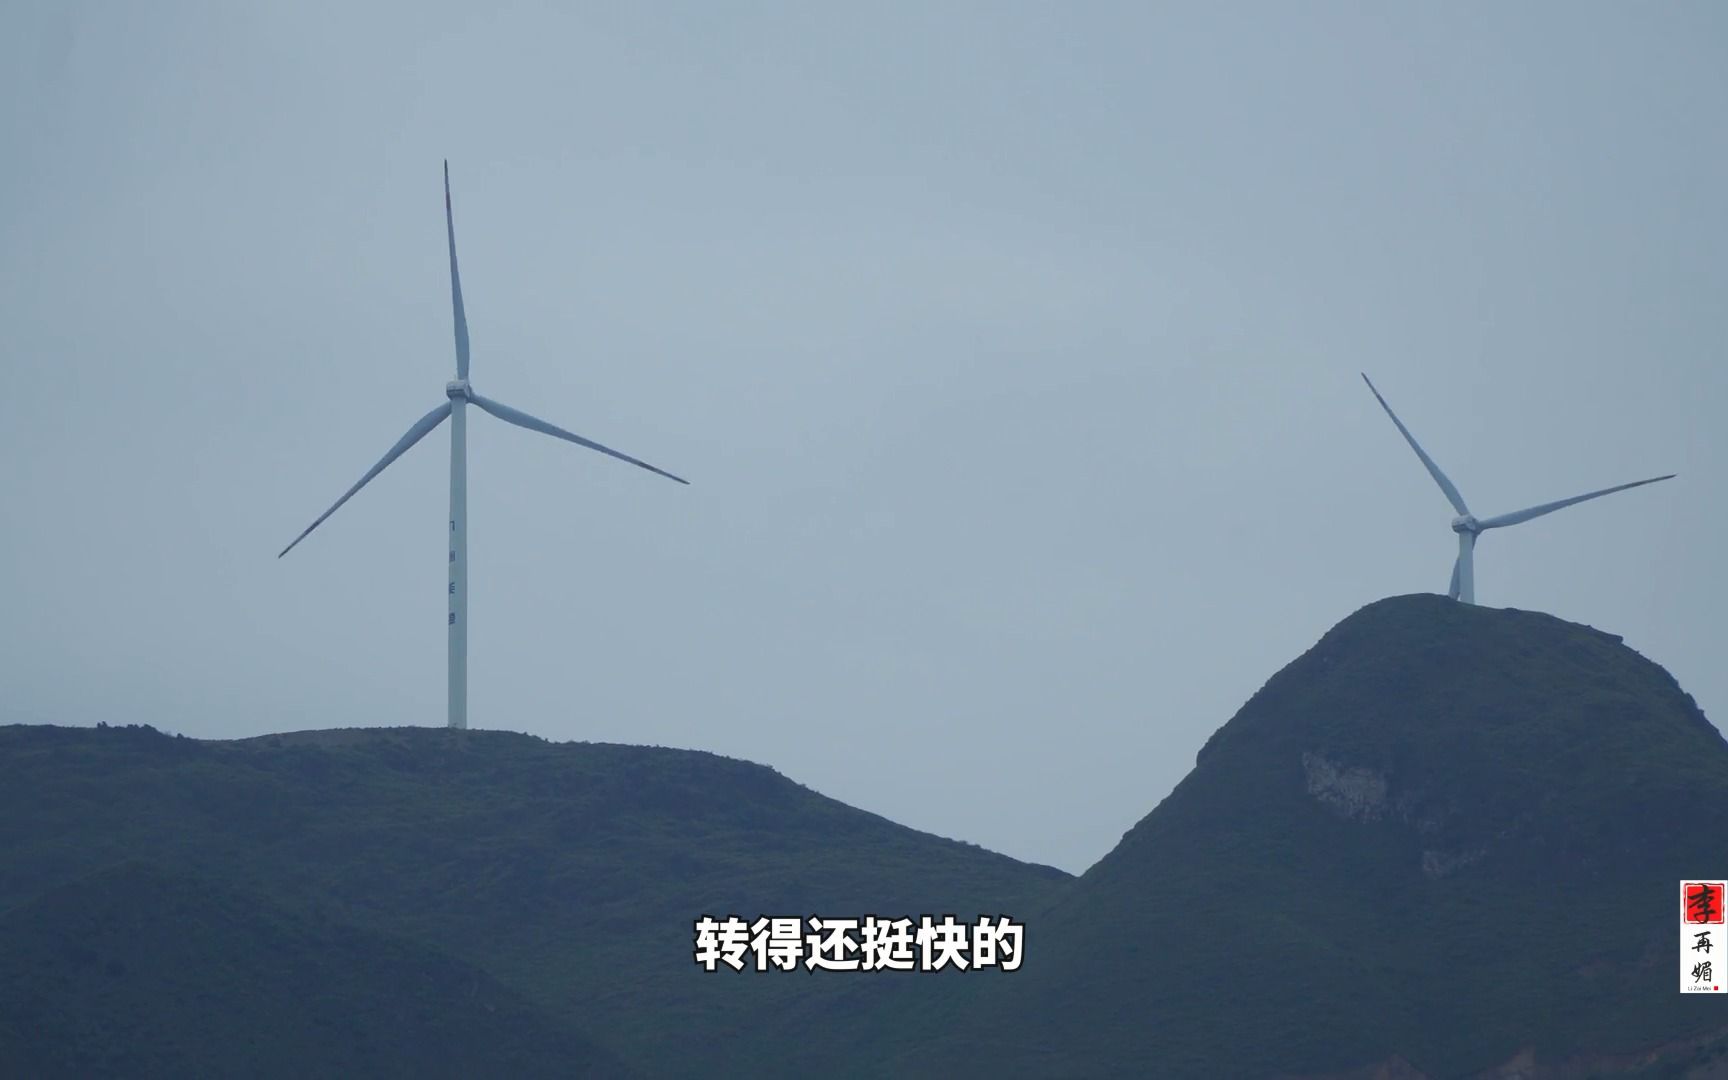 山顶上的风力发电机，每台造价上百万元，转一圈能发多少度电呢？